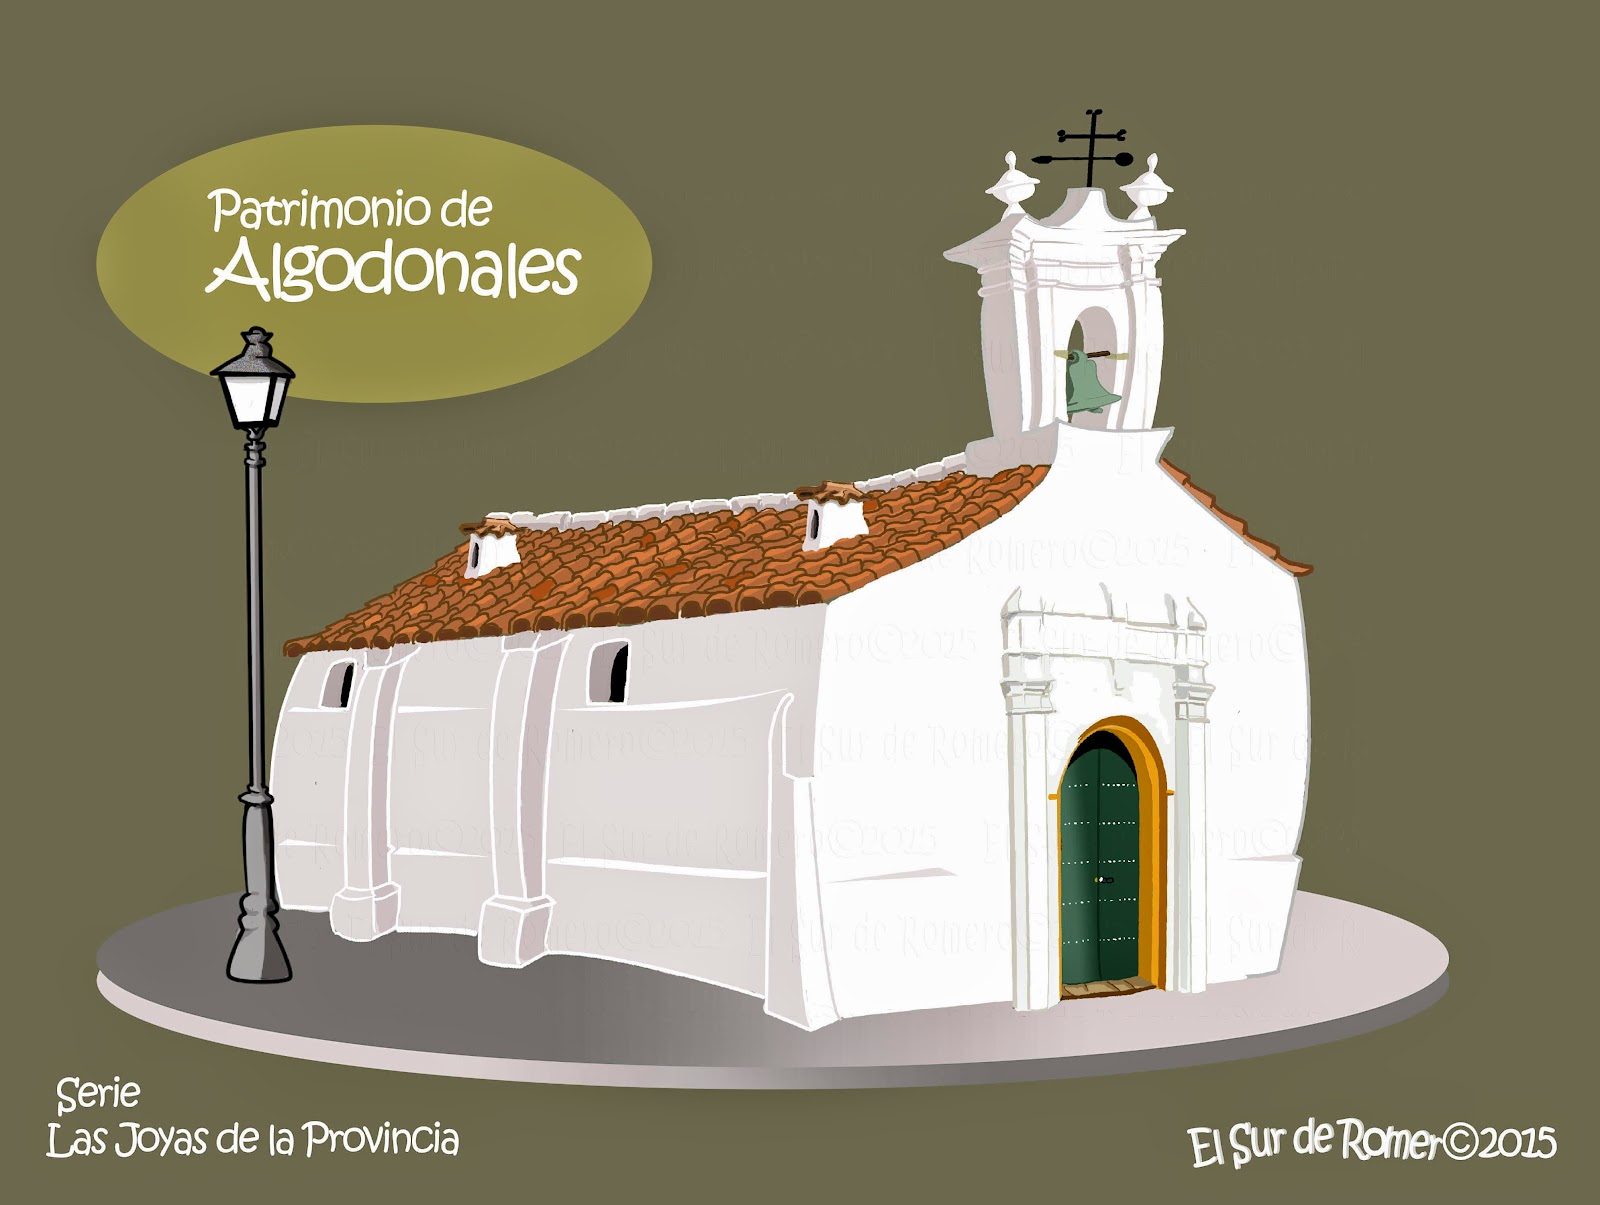 <img src="Ermita de la Concepción.jpg" alt="Iglesias en cómic"/>